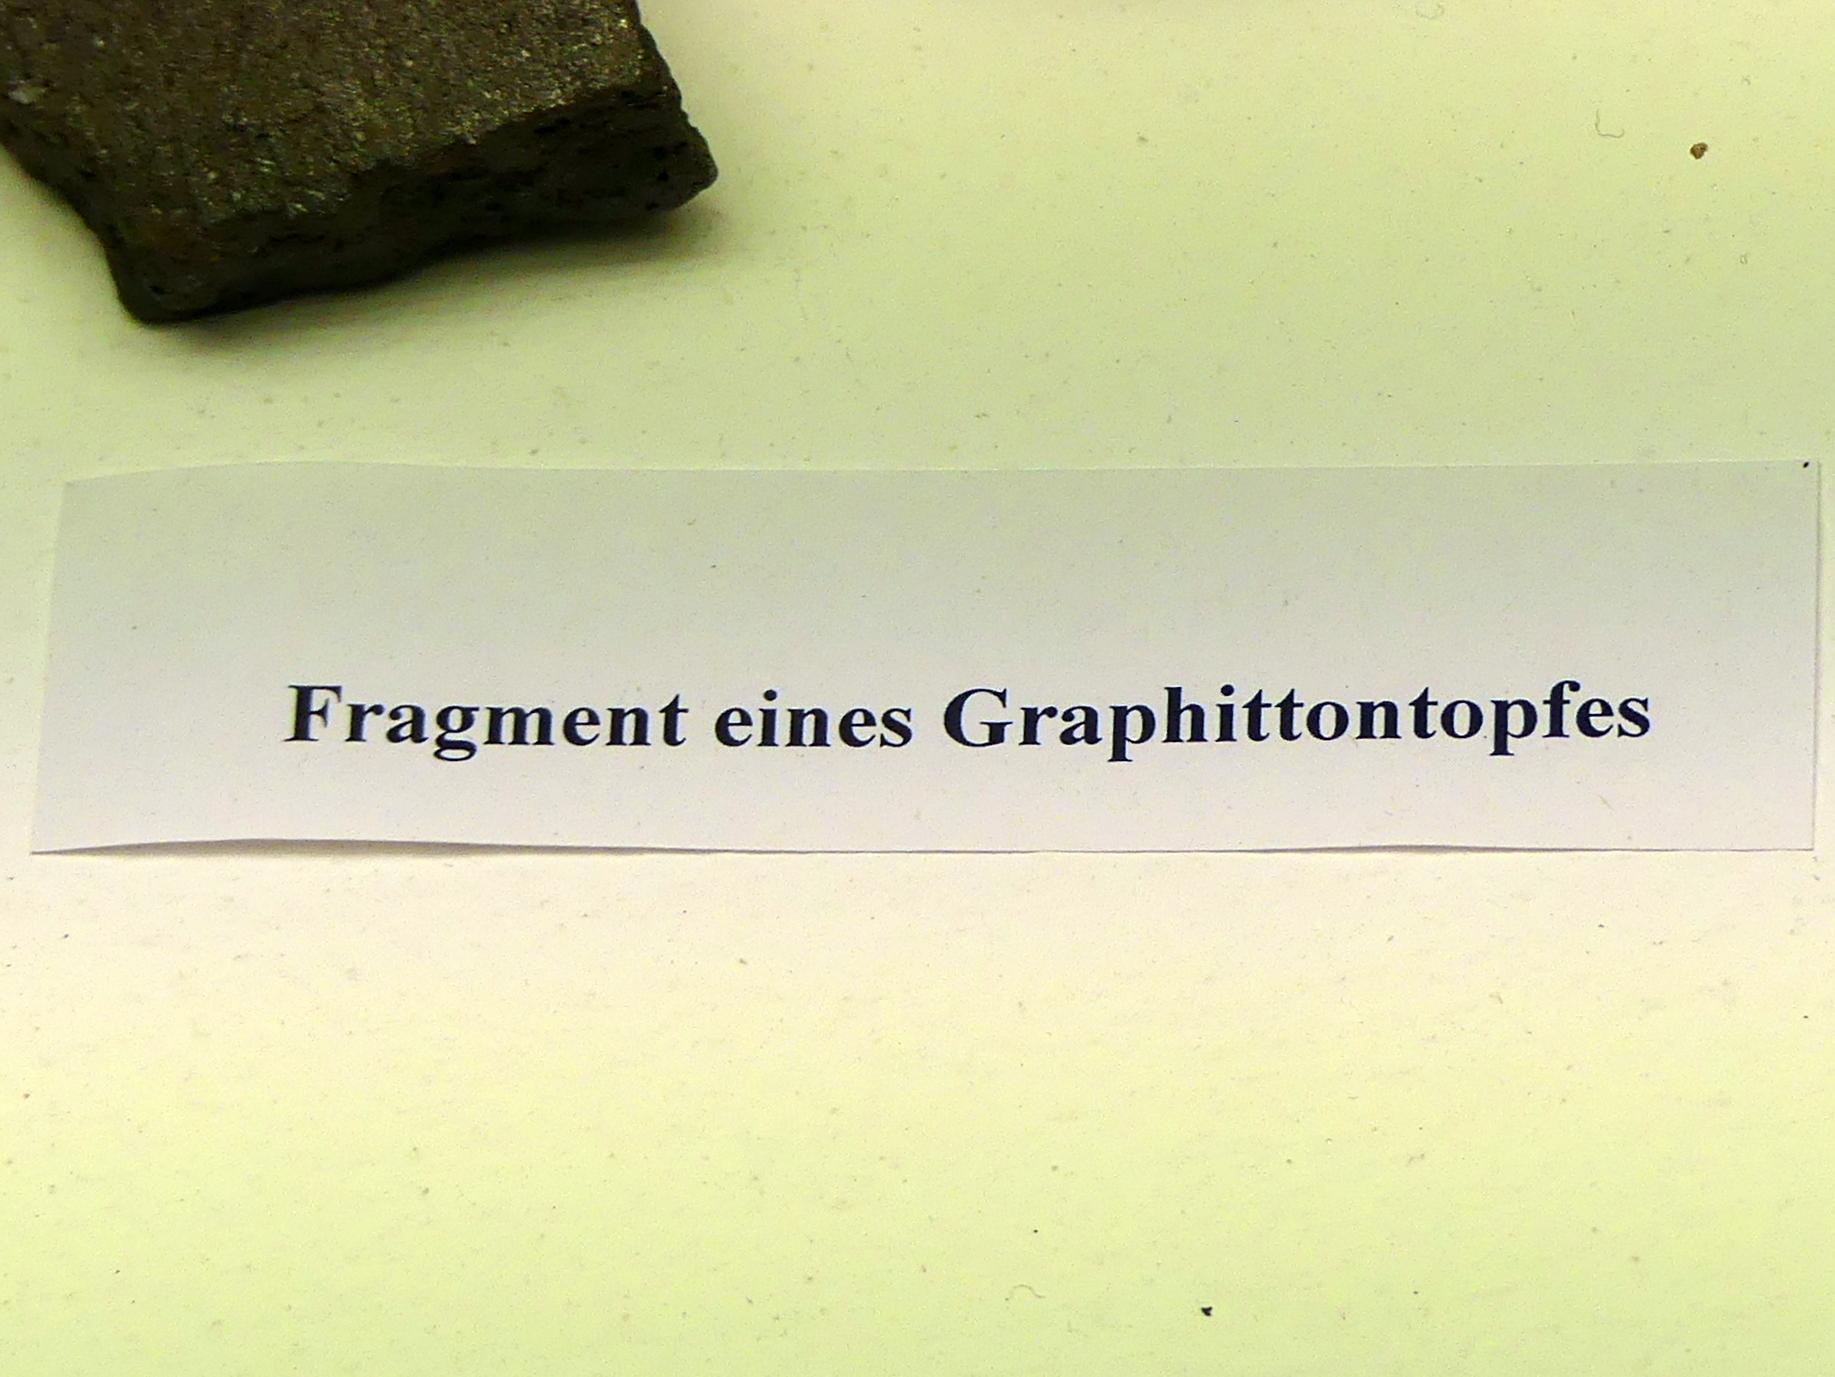 Fragment eines Graphittontopfes, Frühlatènezeit A, 700 - 100 v. Chr., Bild 2/2